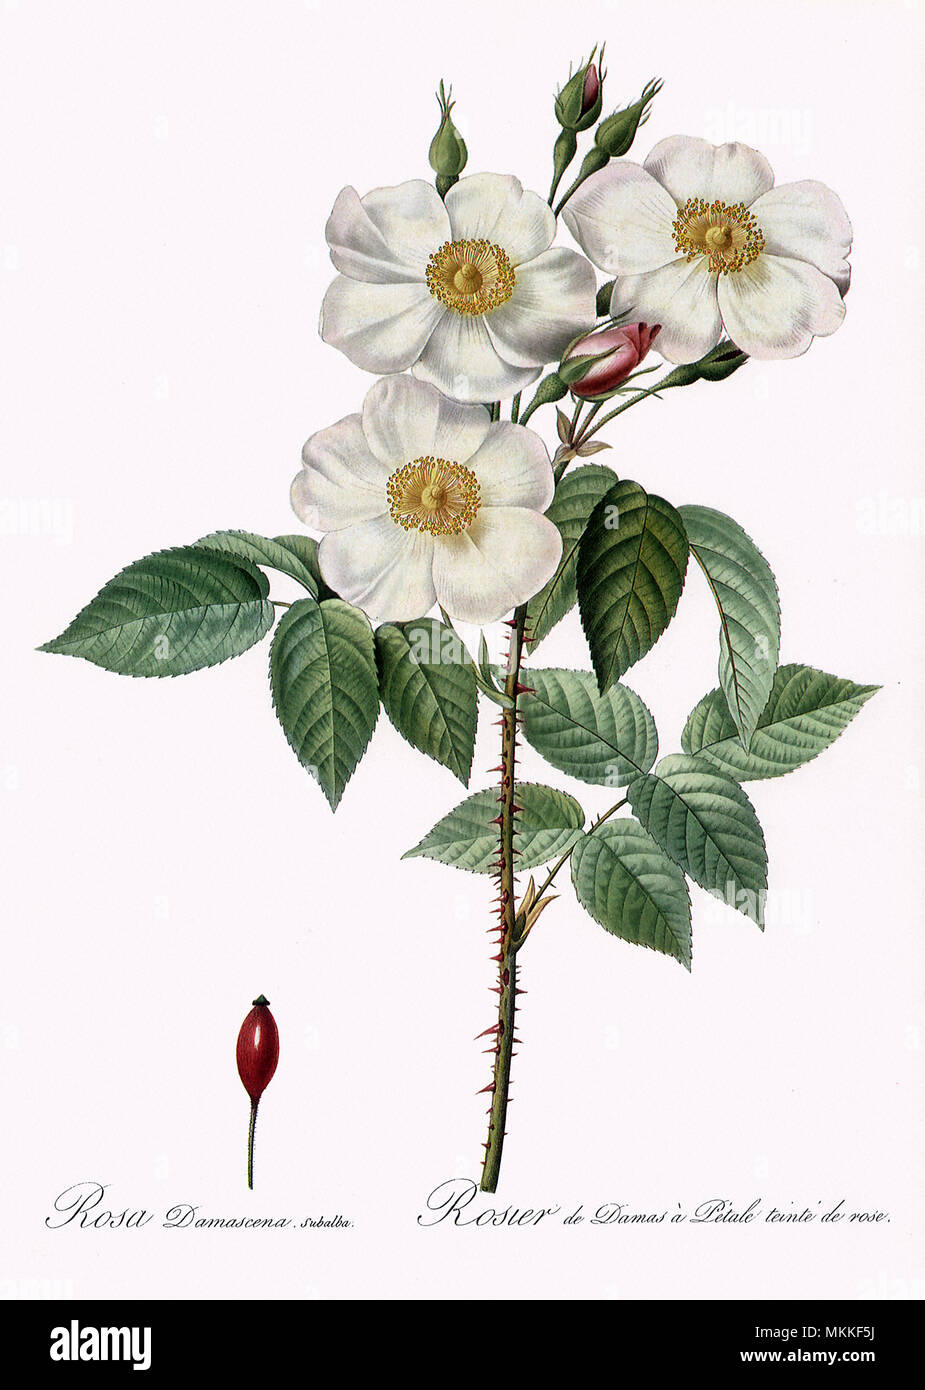 Blush Damask Rose, Rosa Damascena Subalba Stock Photo